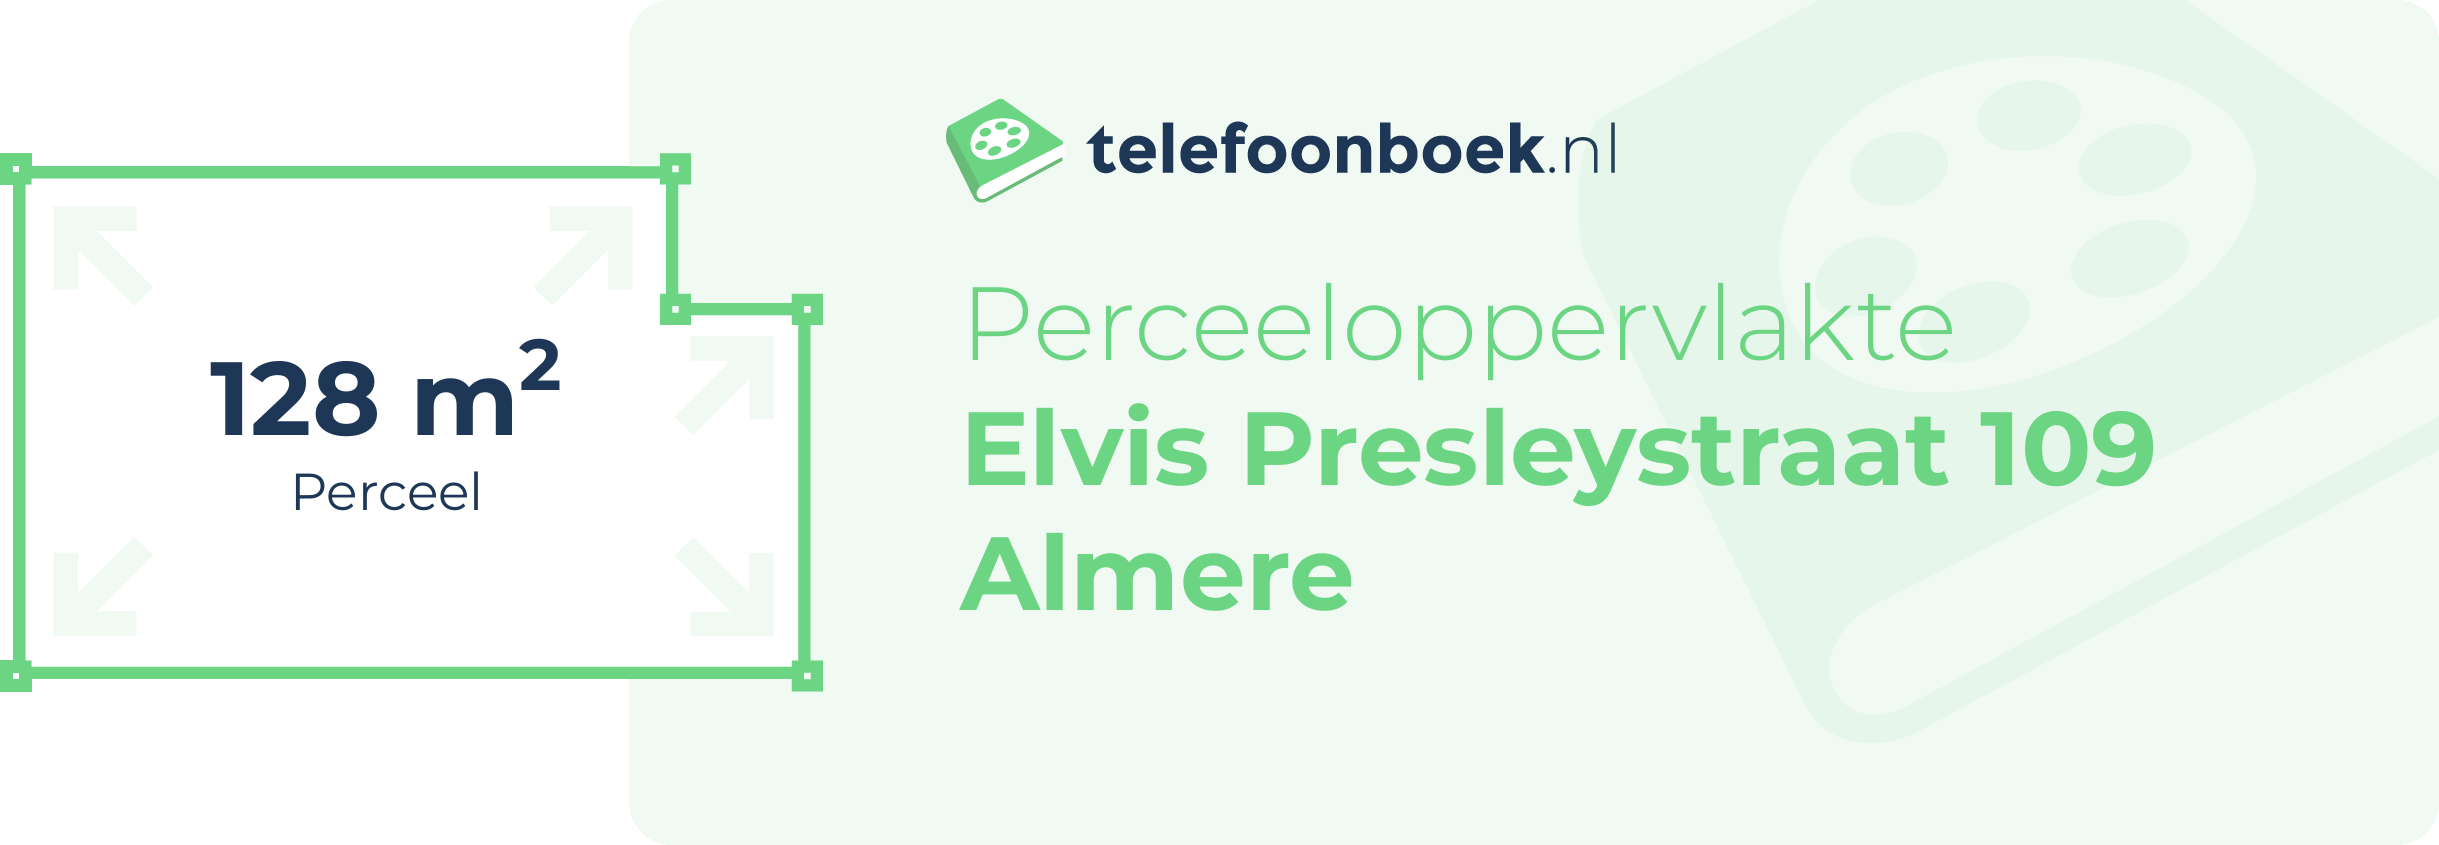 Perceeloppervlakte Elvis Presleystraat 109 Almere